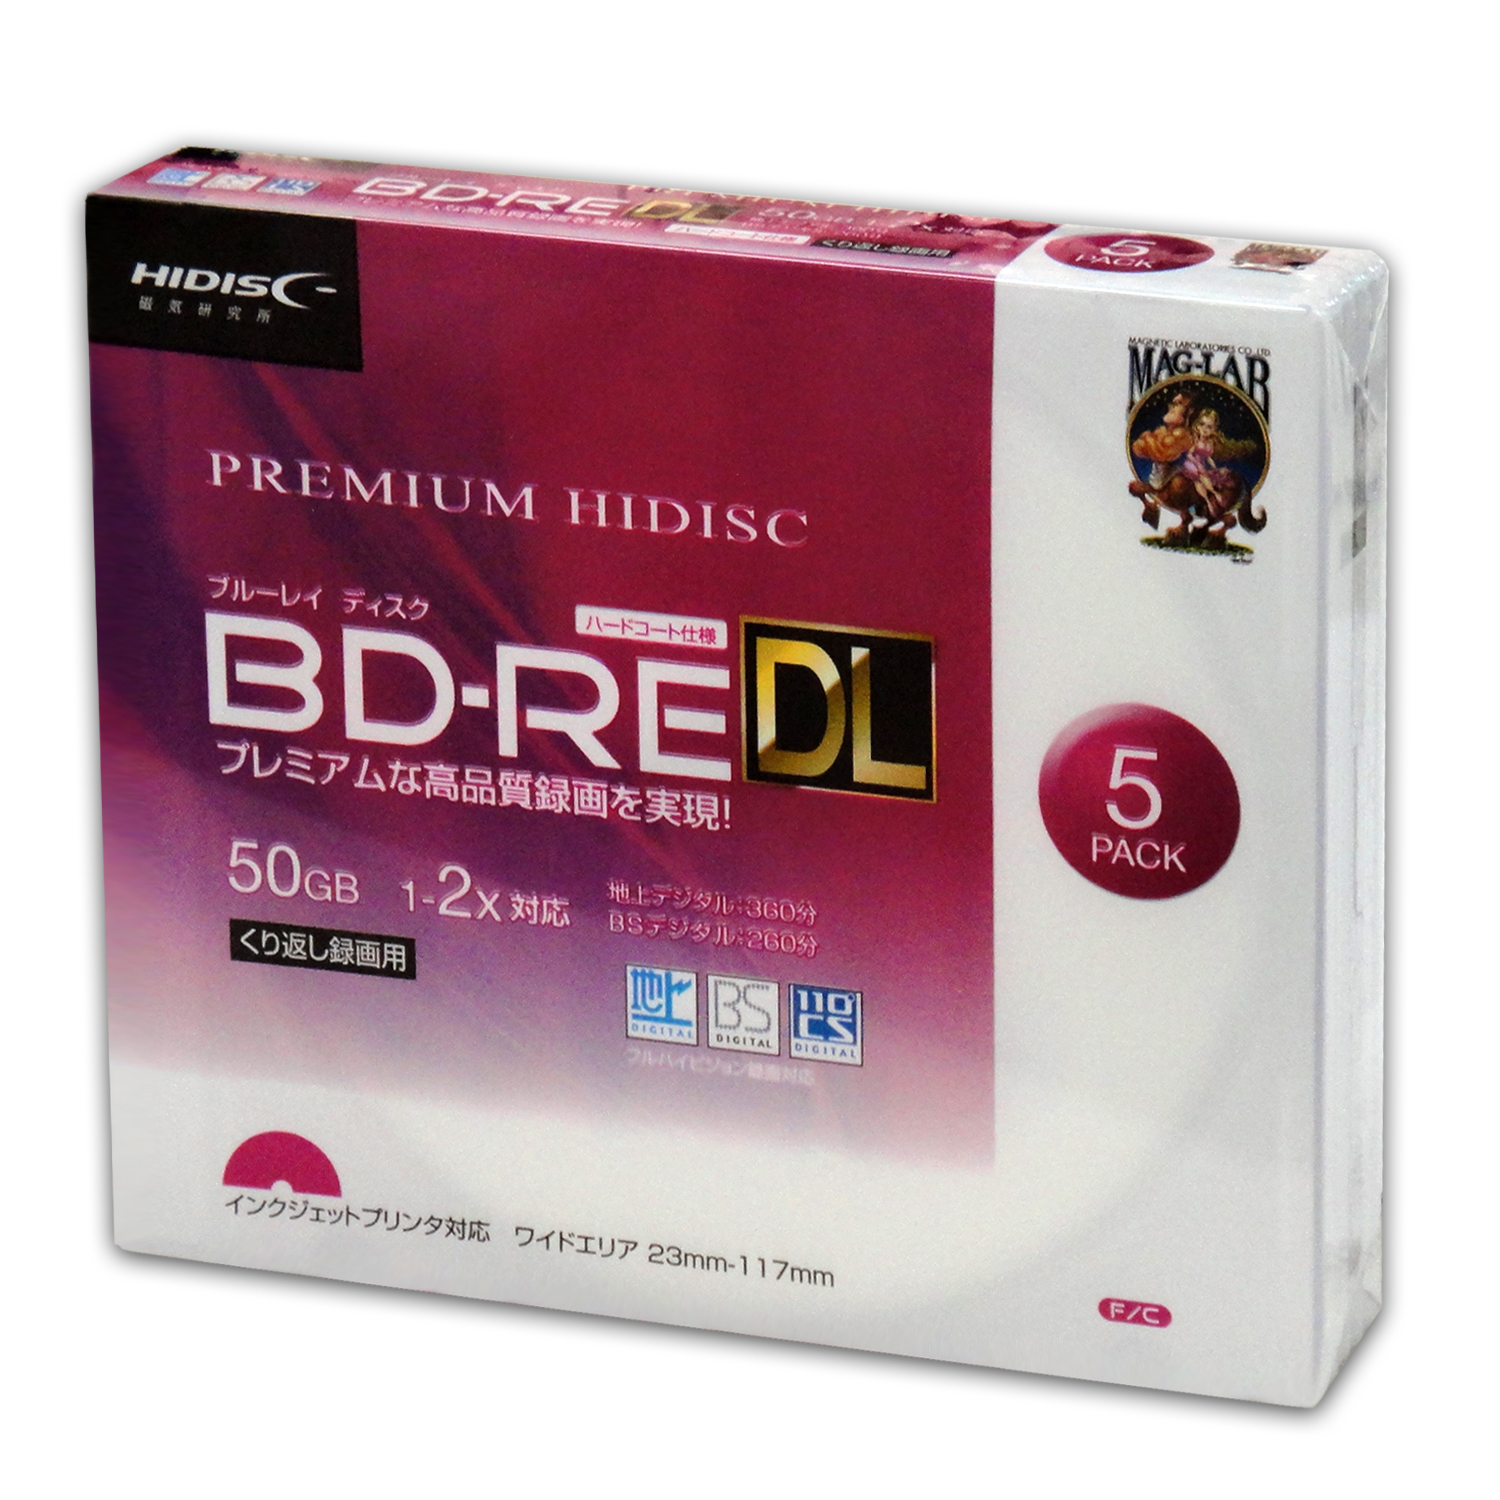 PREMIUM HIDISC  BD-RE DL 1-2倍速対応 50GB くり返し録画用デジタル放送対応 インクジェットプリンタ対応5枚　スリムケース入り HDVBE50NP5SC